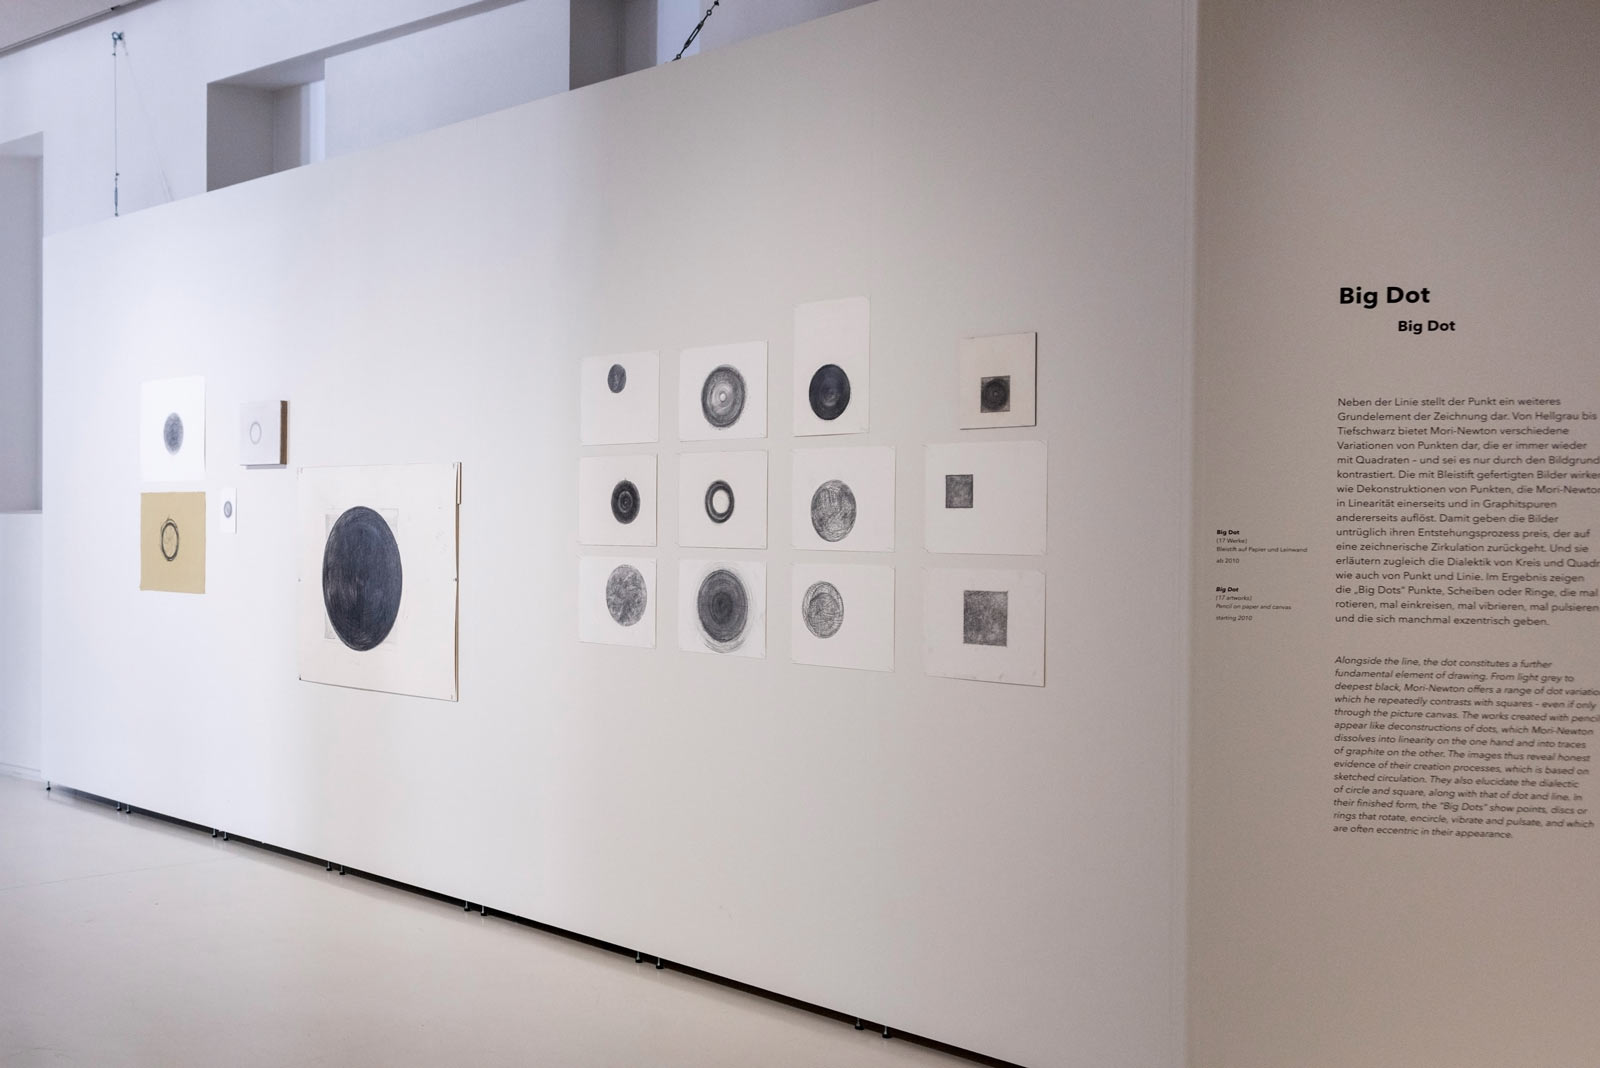 Das Referenzbild für Ausstellungsgestaltung aus der Sonderausstellung No intention: Koho Mori-Newton zeigt die Bildergalerie Big Rot.